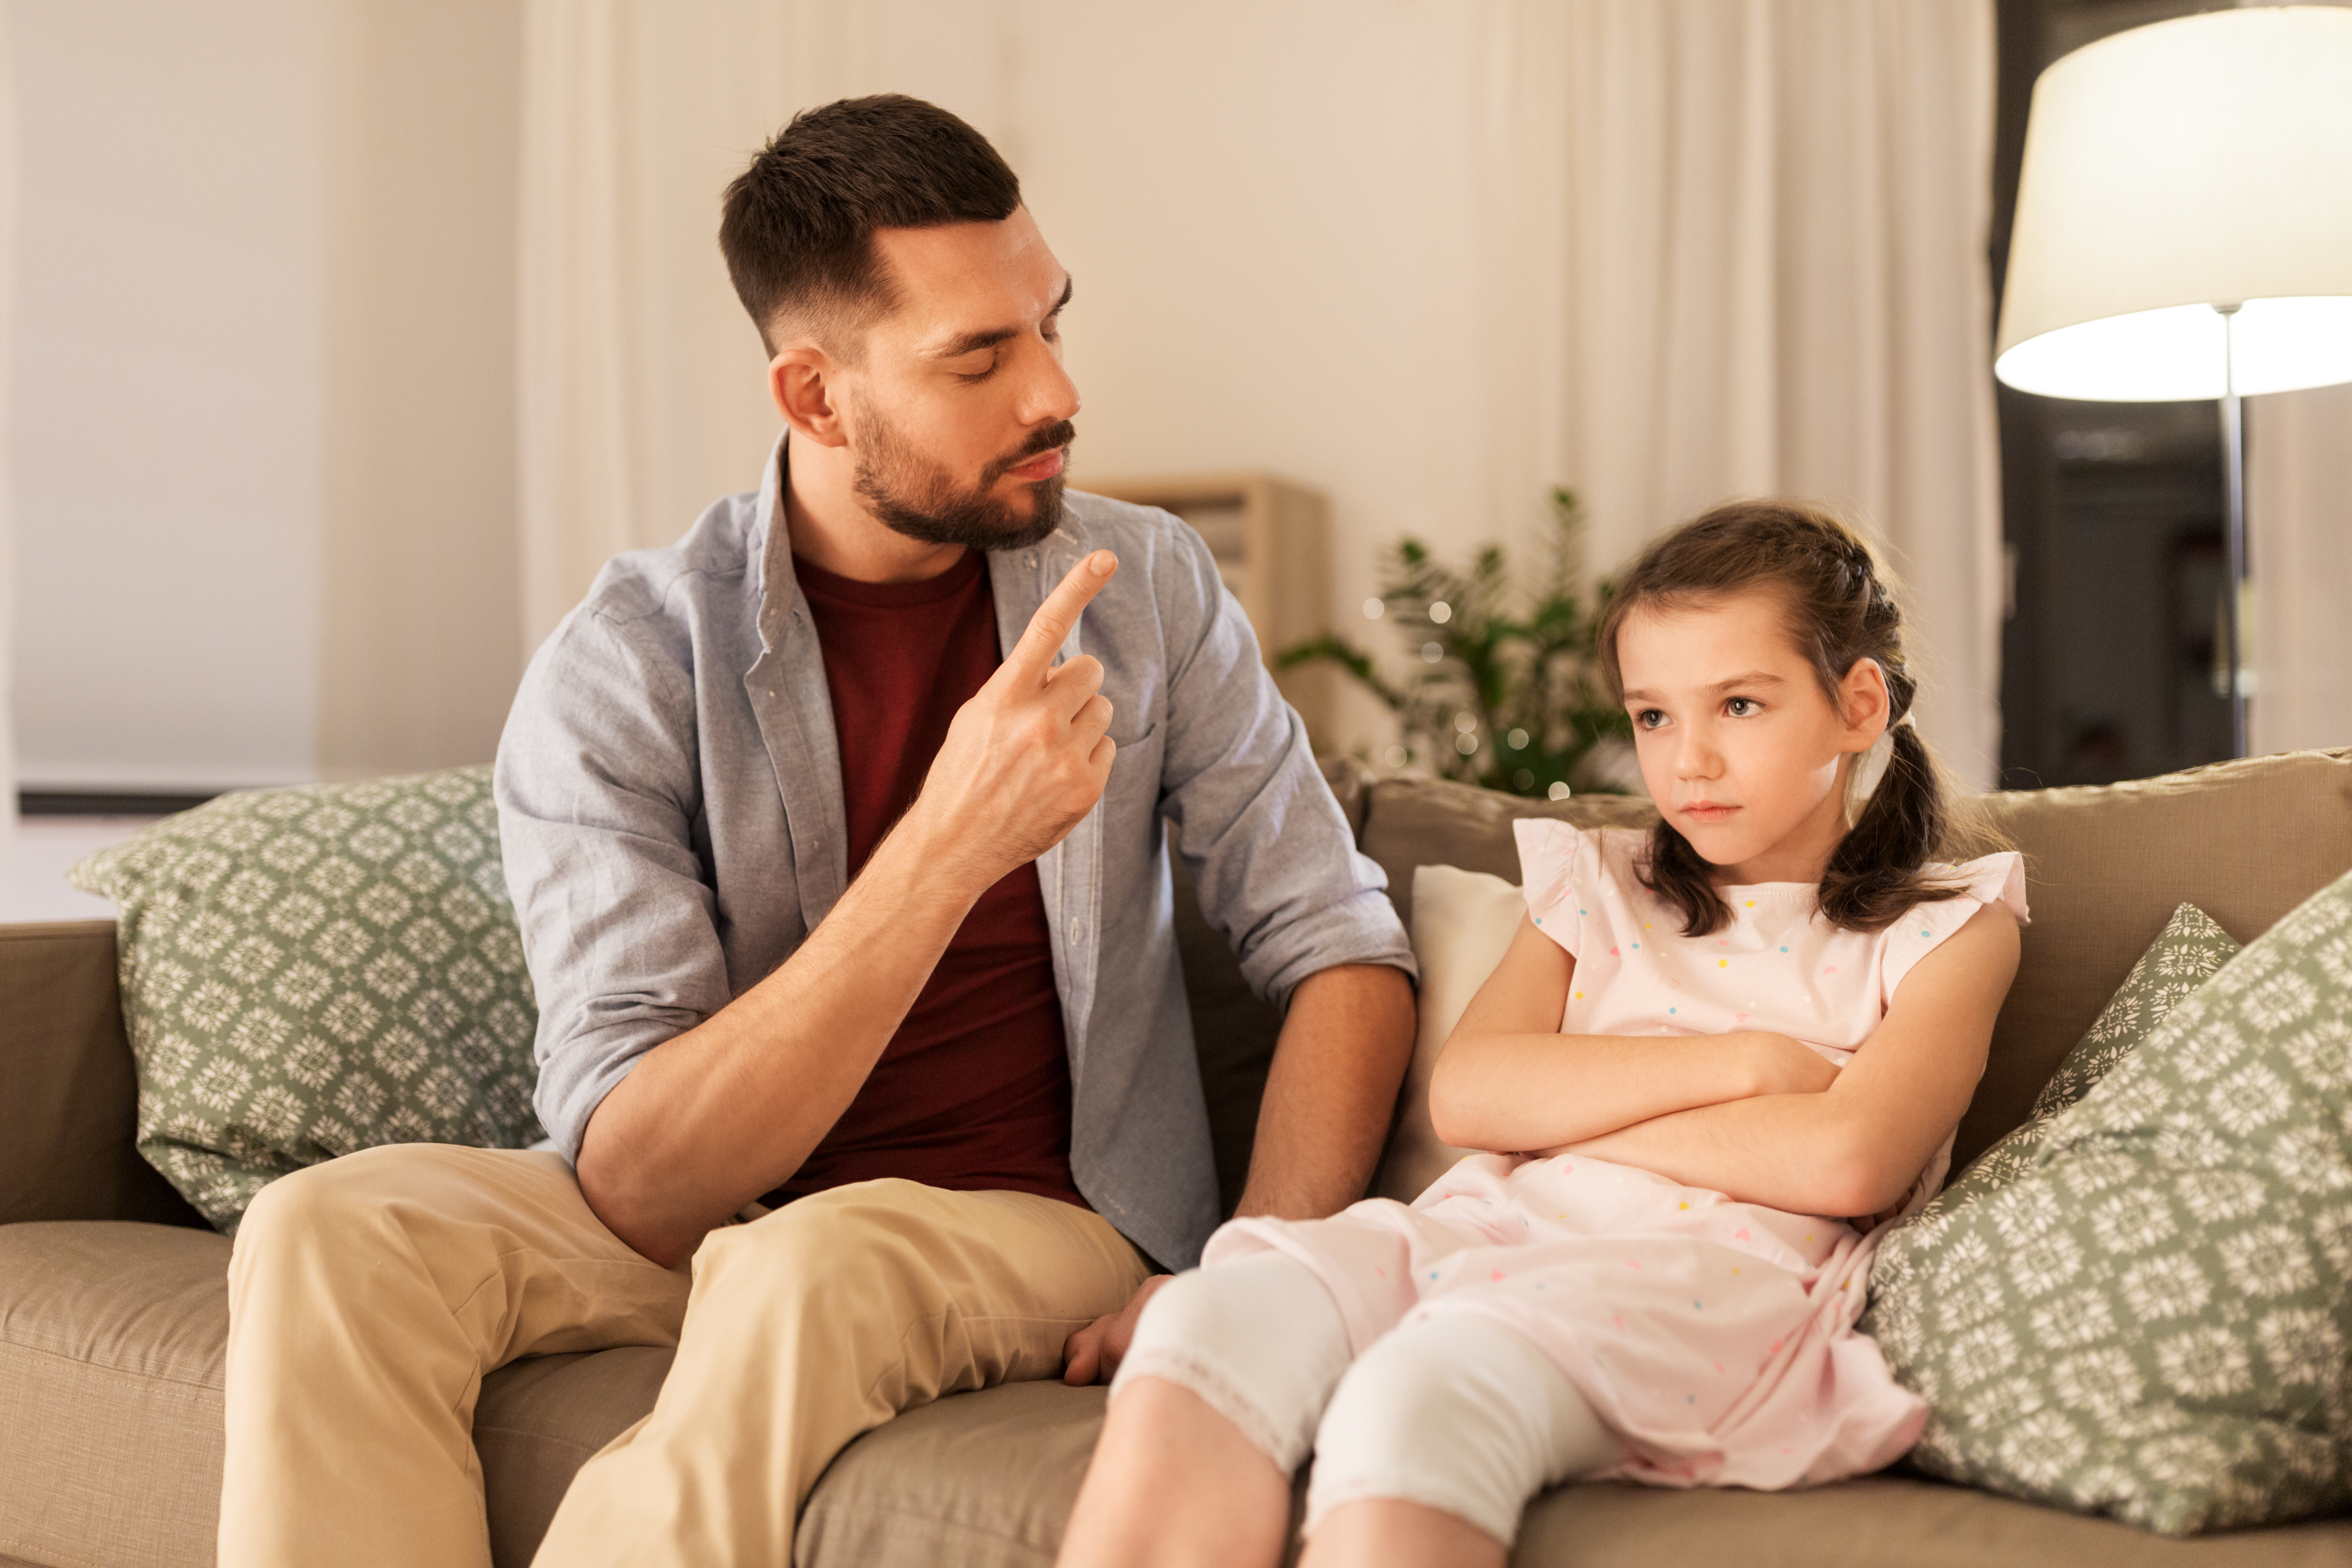 Un père disciplinant sa fille | Source : Shutterstock